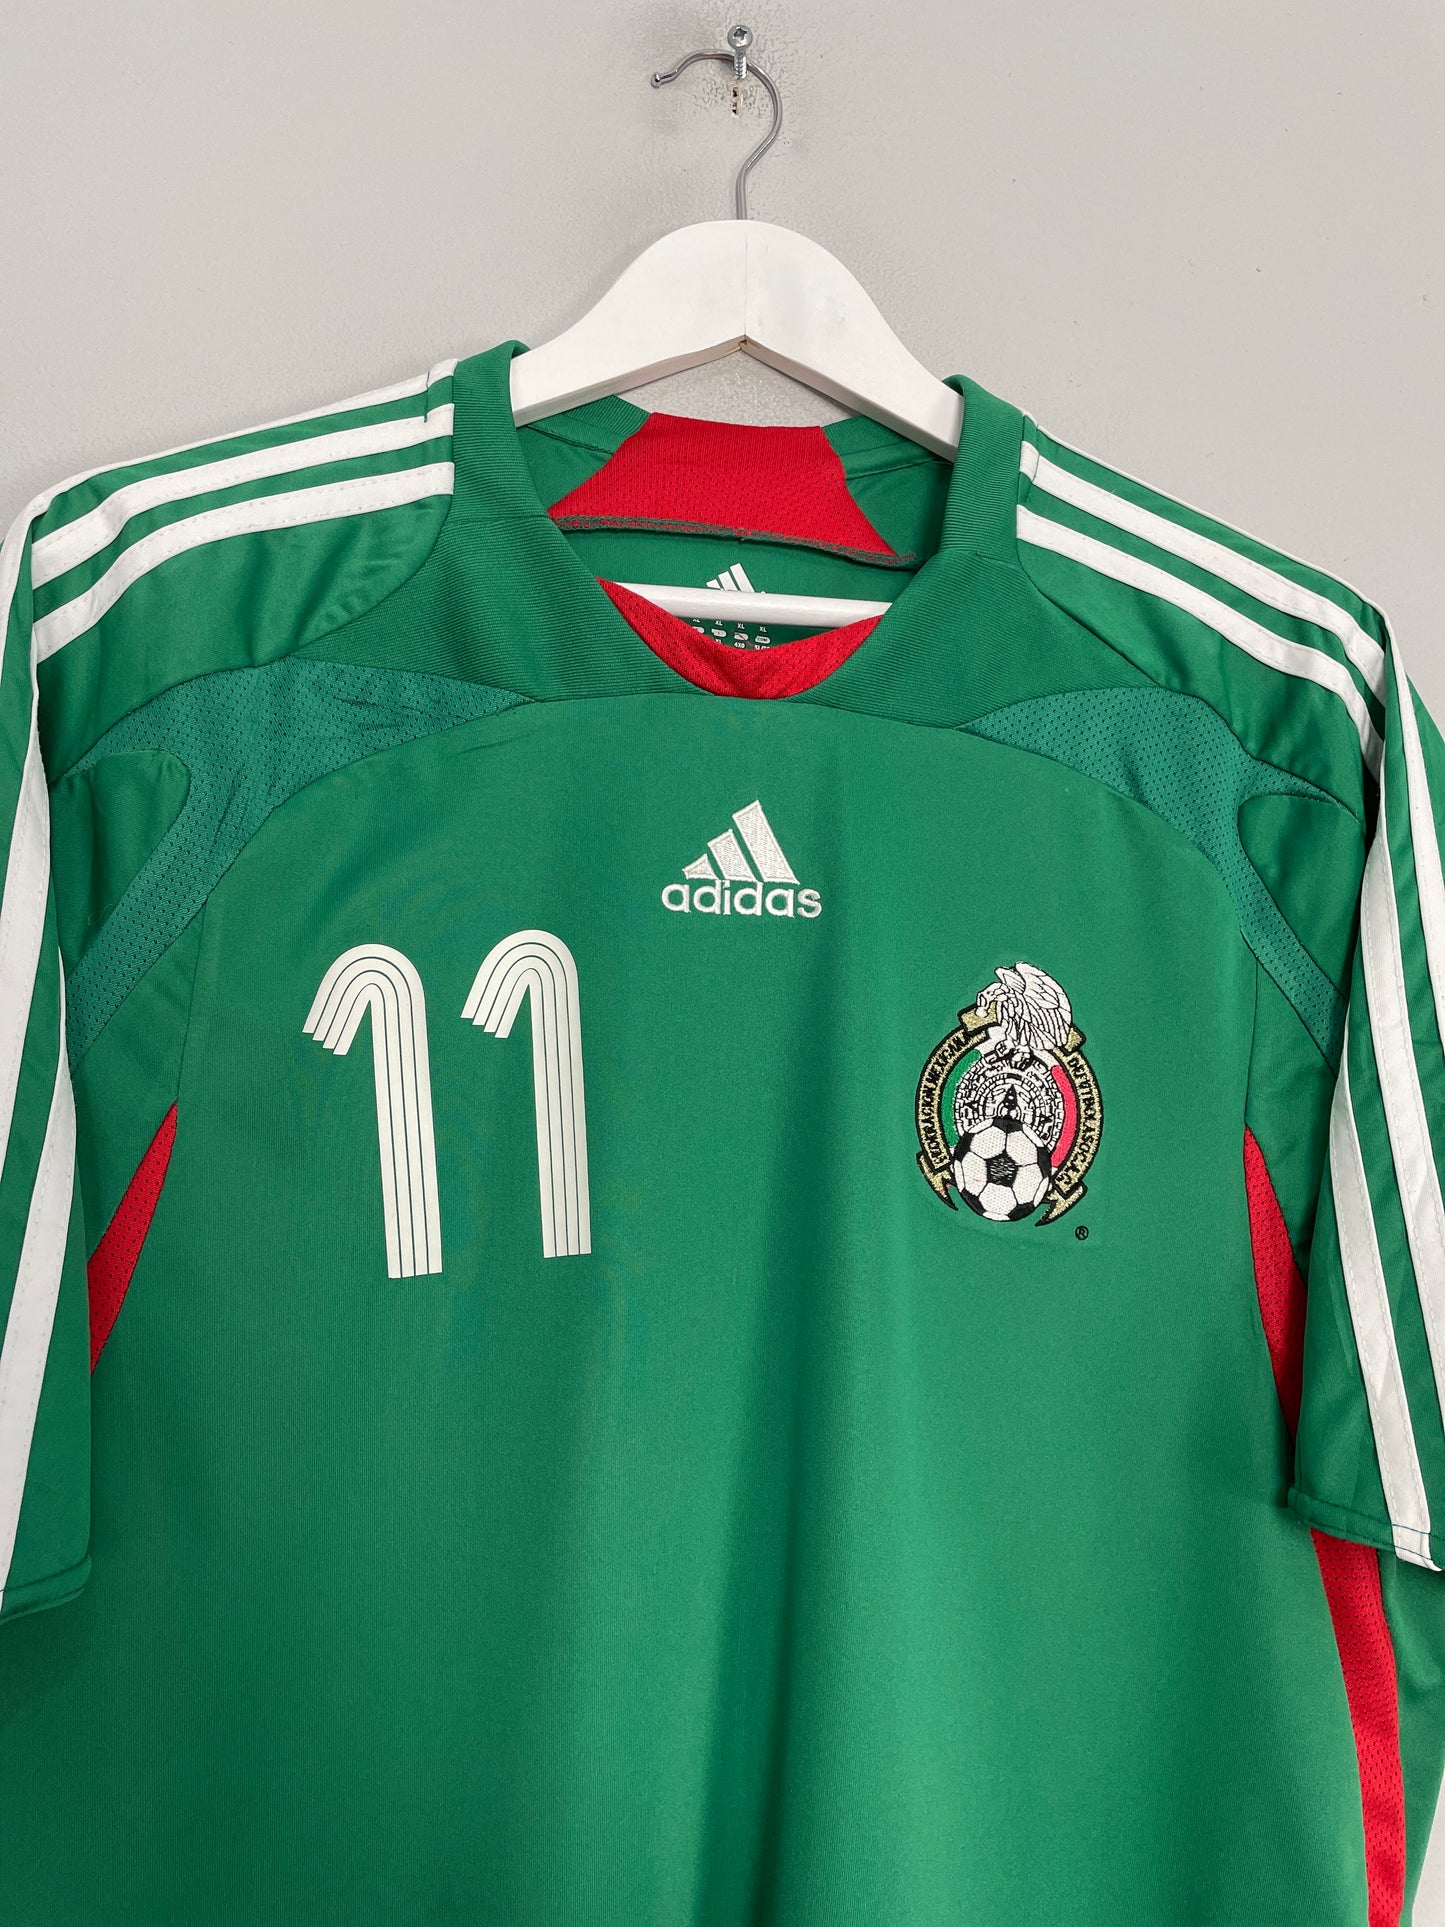 2007/08 MEXICO GUARDADO #11 HOME SHIRT (XL) ADIDAS